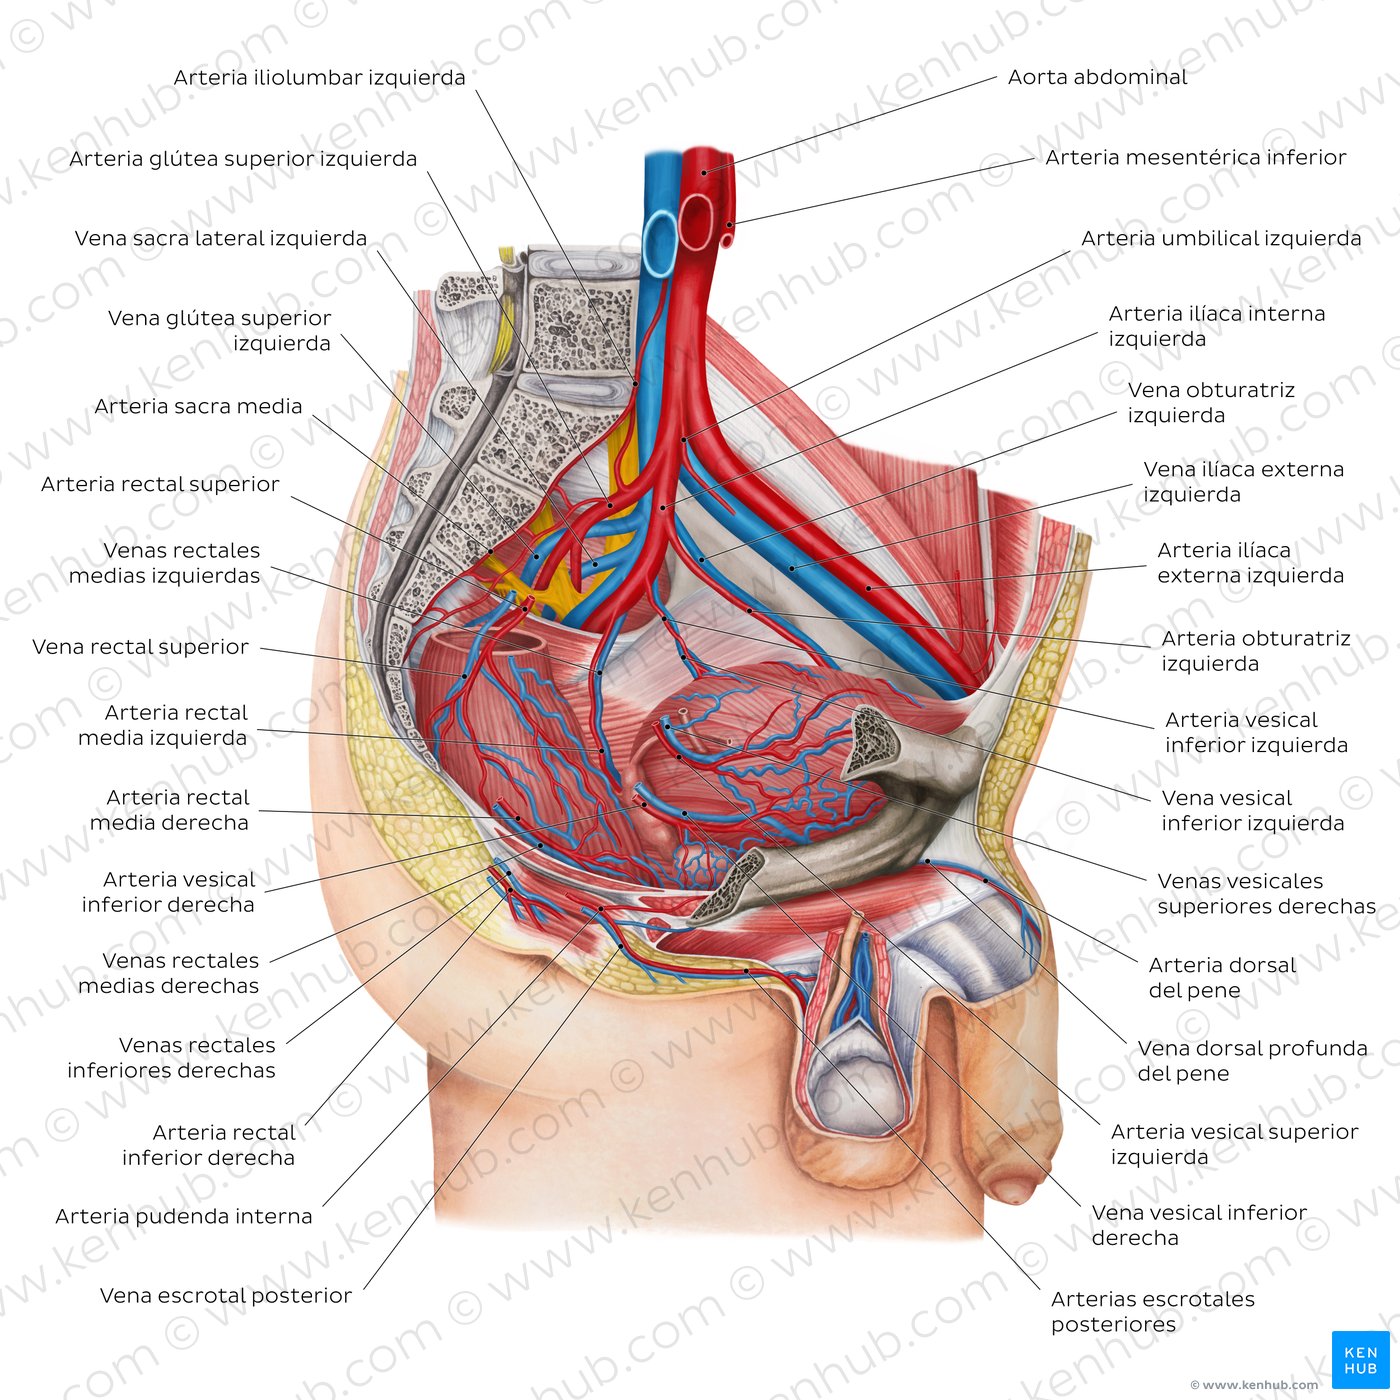 Arterias y venas de la pelvis masculina